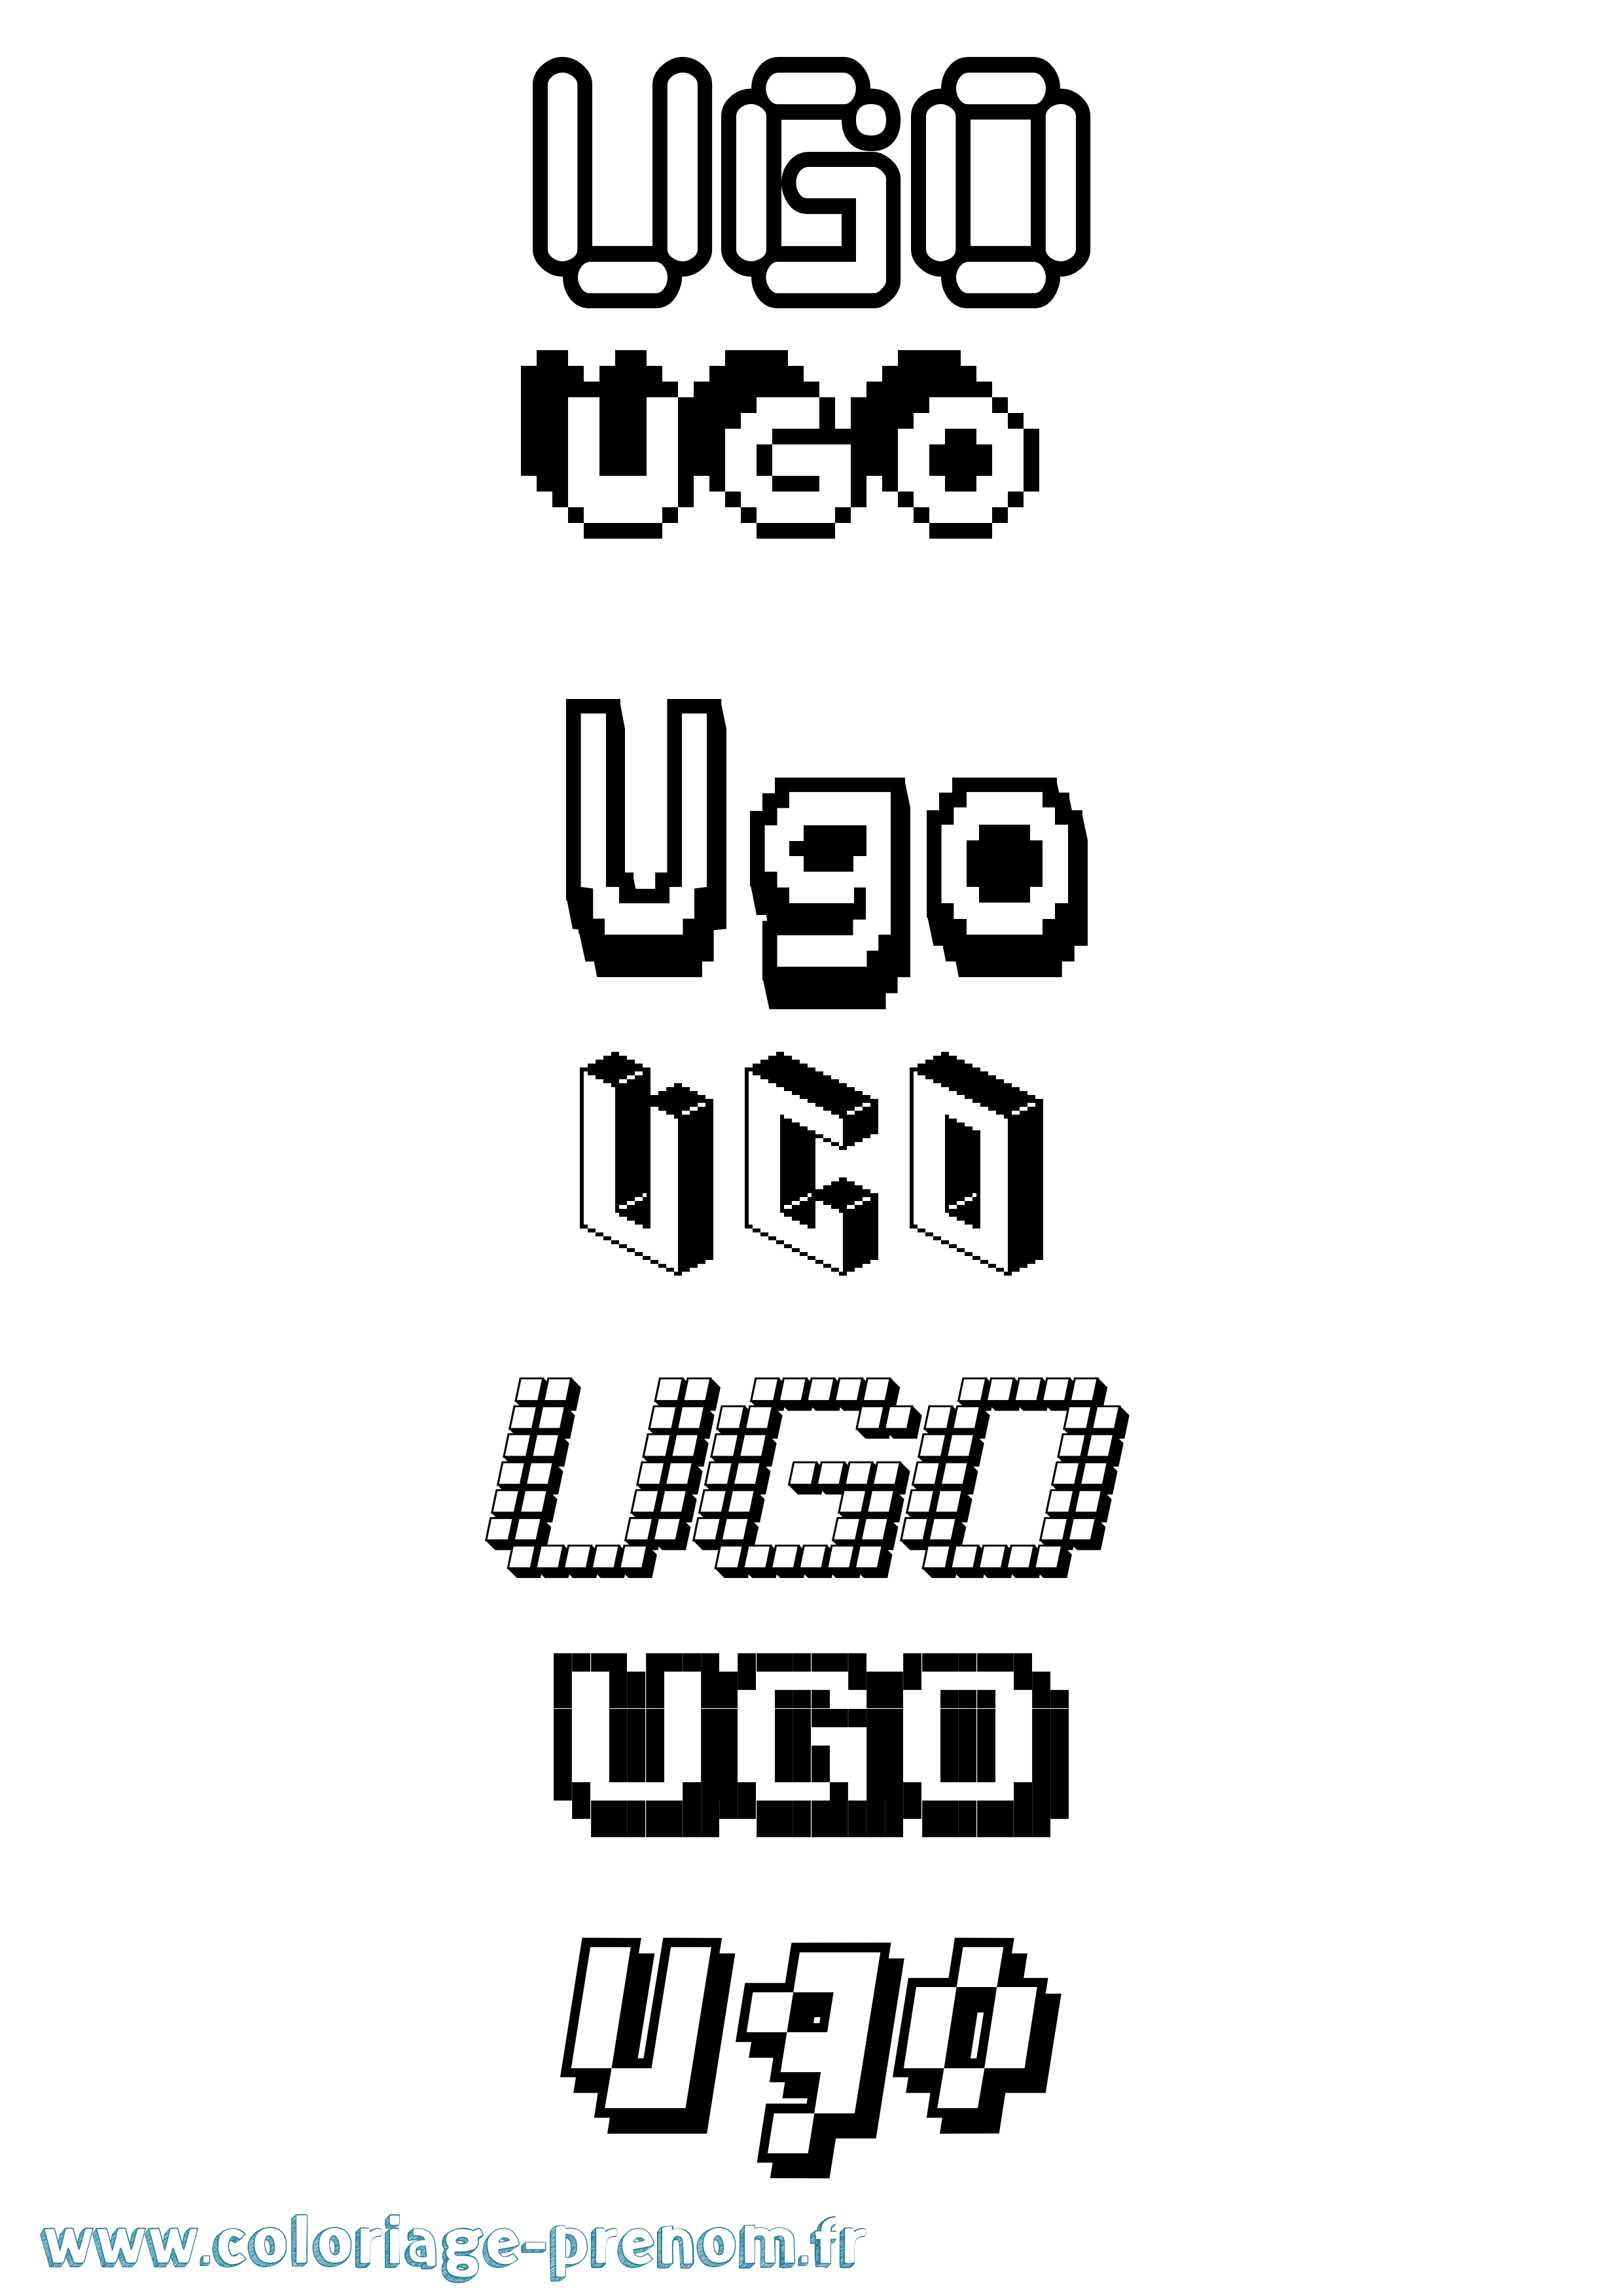 Coloriage prénom Ugo Pixel